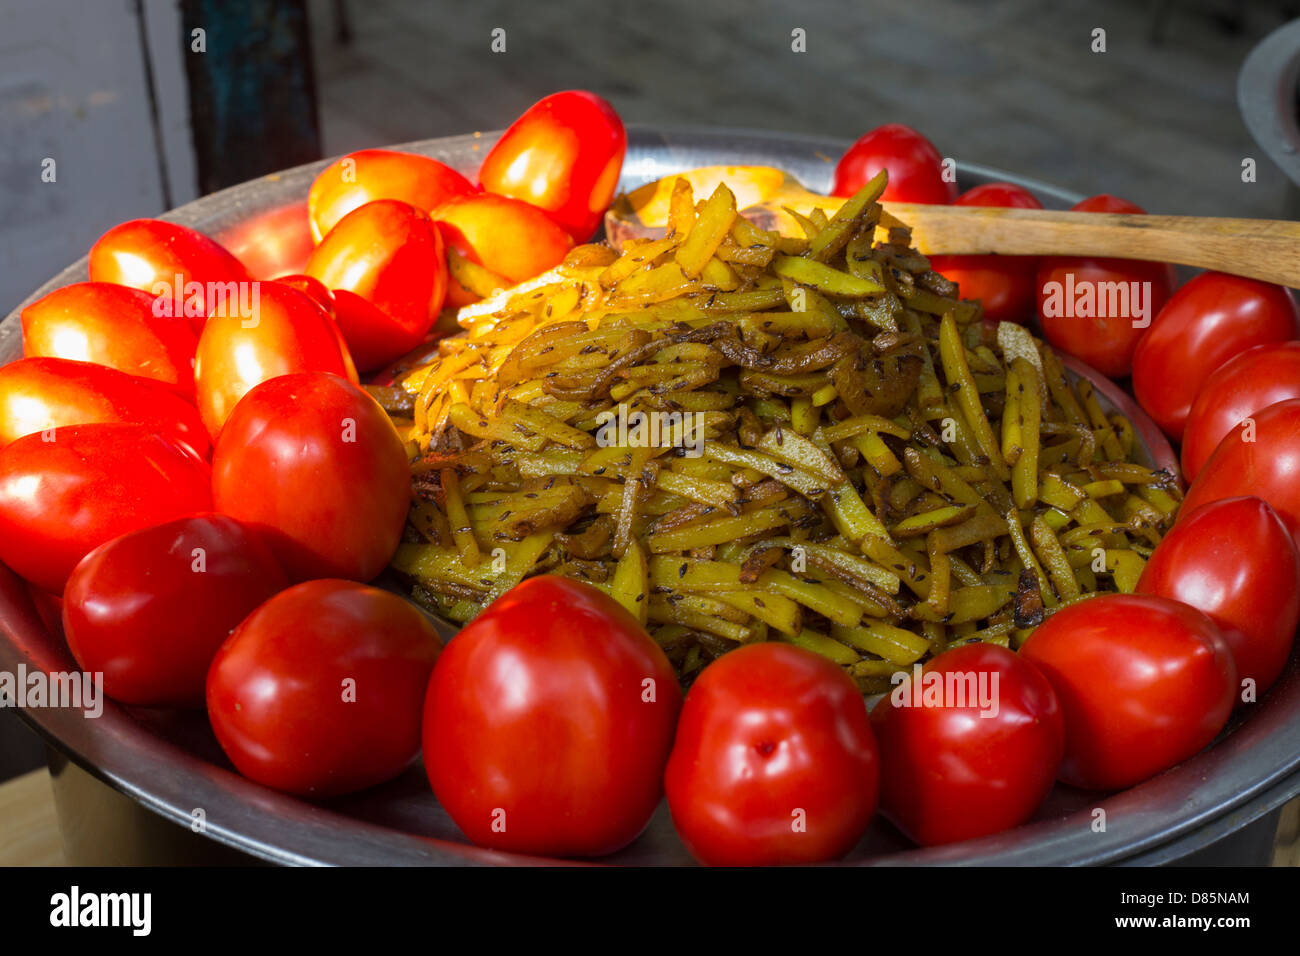 L'Inde, Uttar Pradesh, New Delhi, les tomates et les lamelles de pommes de terre au curry Banque D'Images